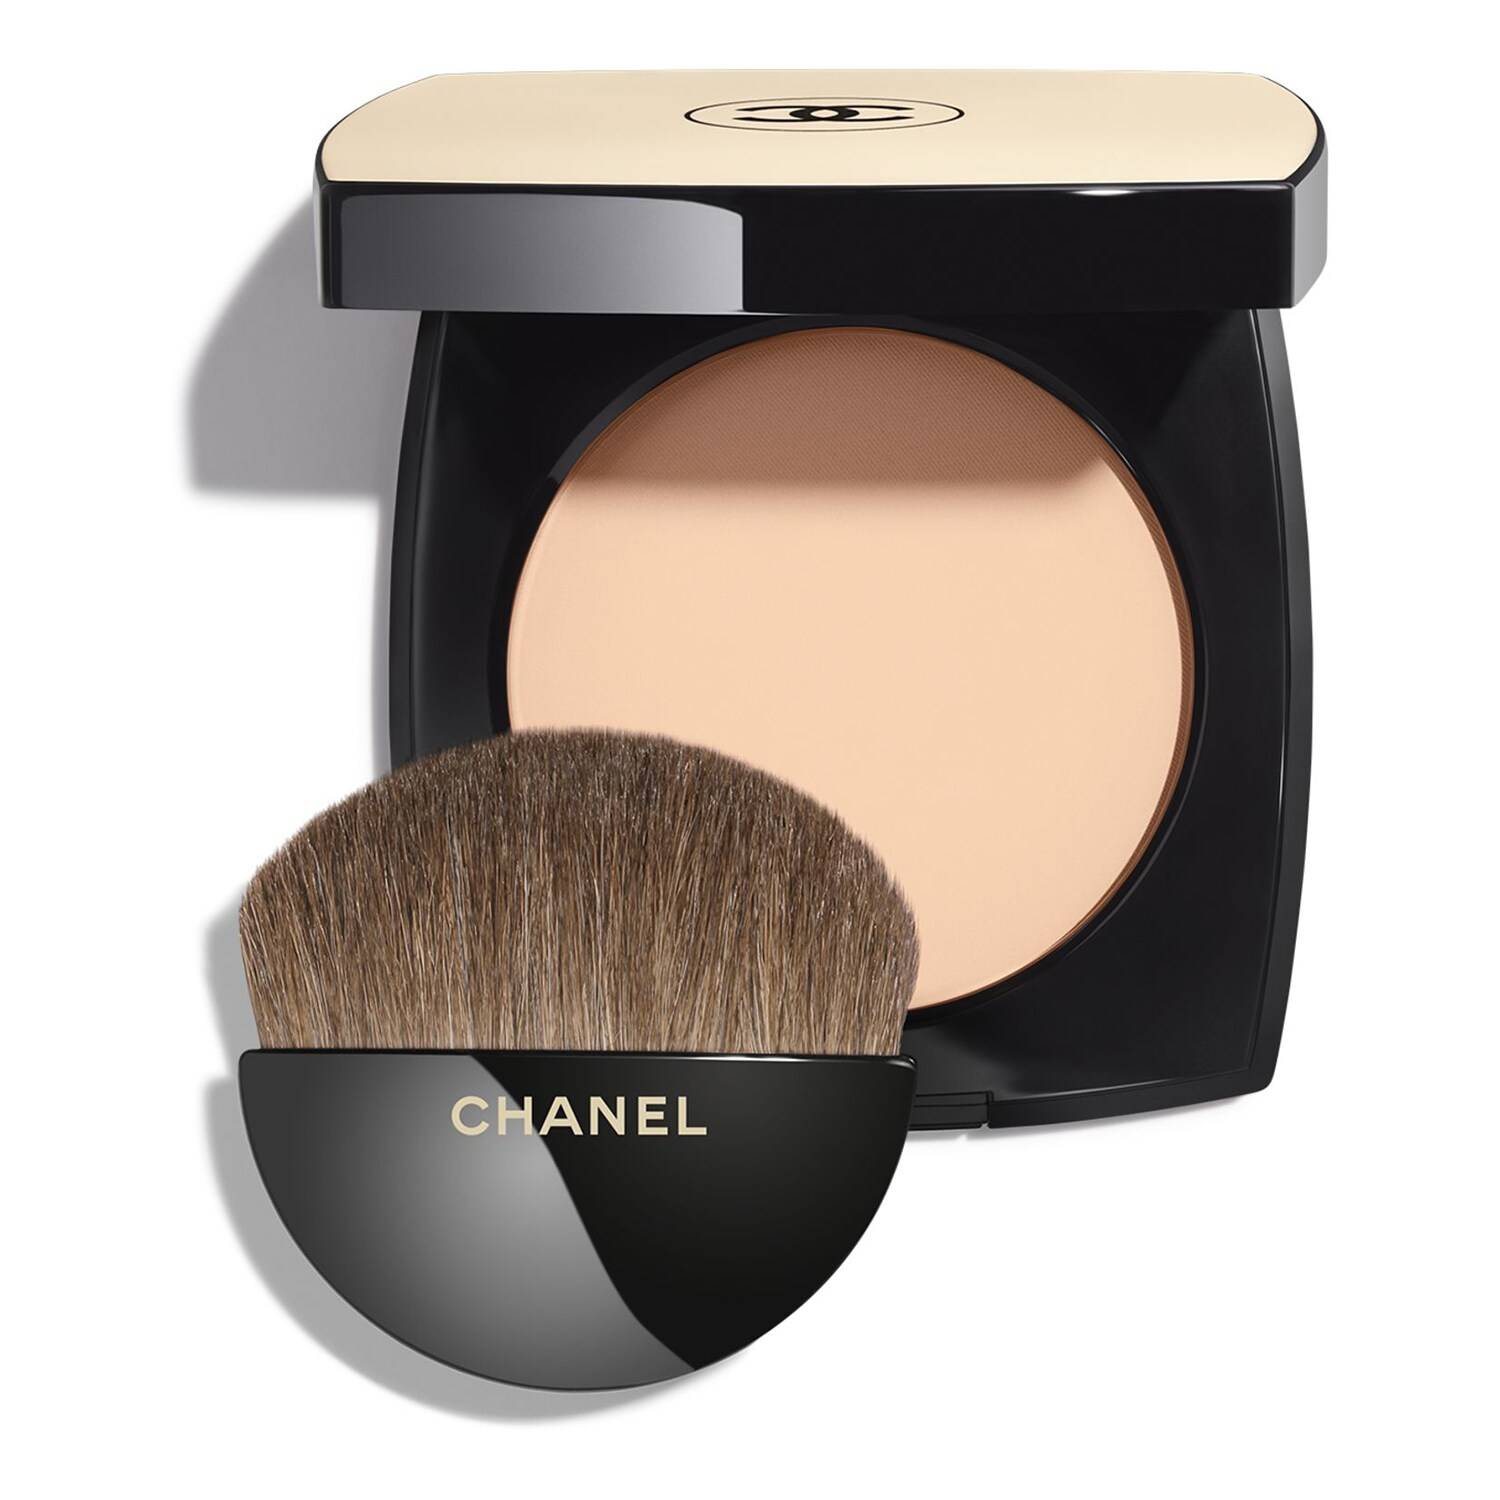 Chanel Les Beiges Healthy Glow Powder 12G B10